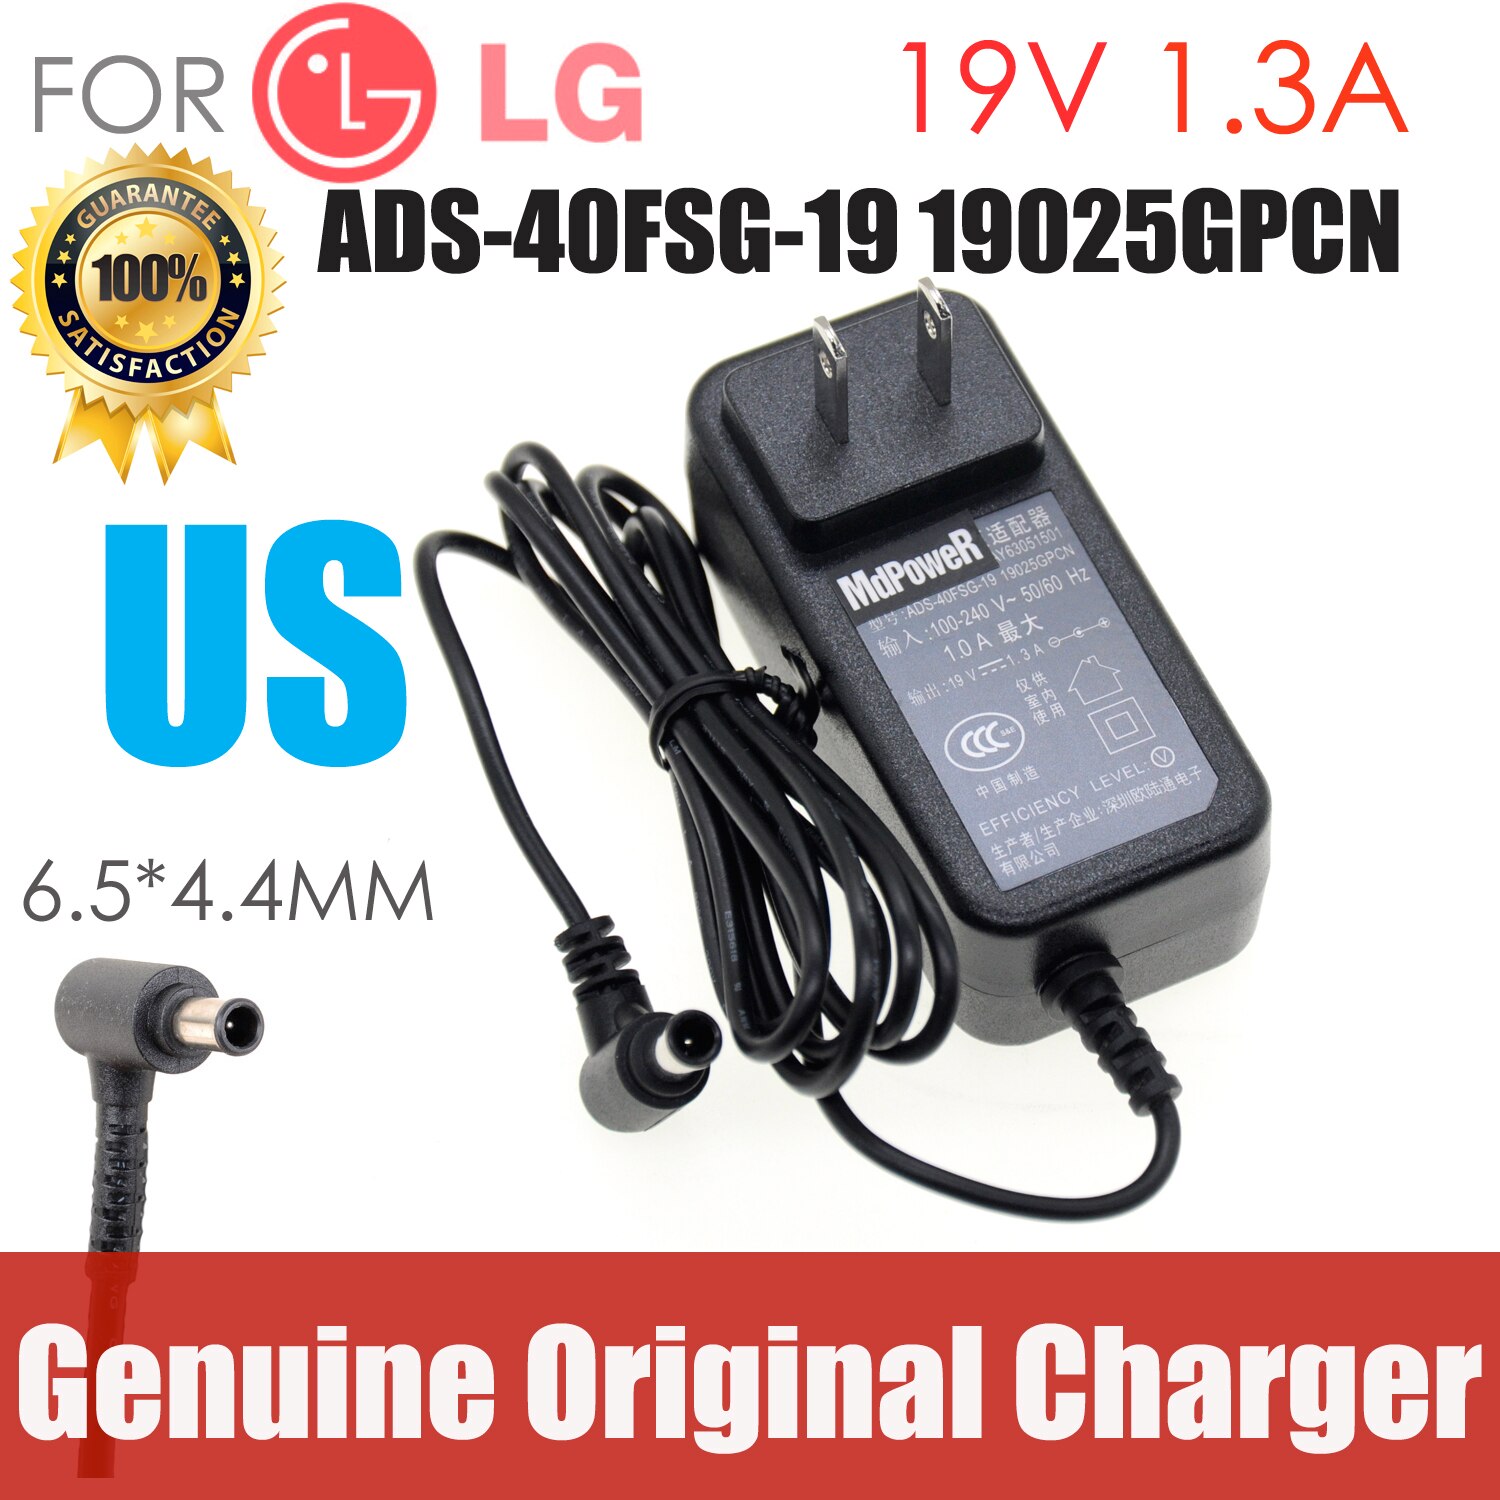 Originele Voor Lg 19V 1.3A ADS-40FSG-19 Us Plug Ac Adapter Voeding Lader Snoer